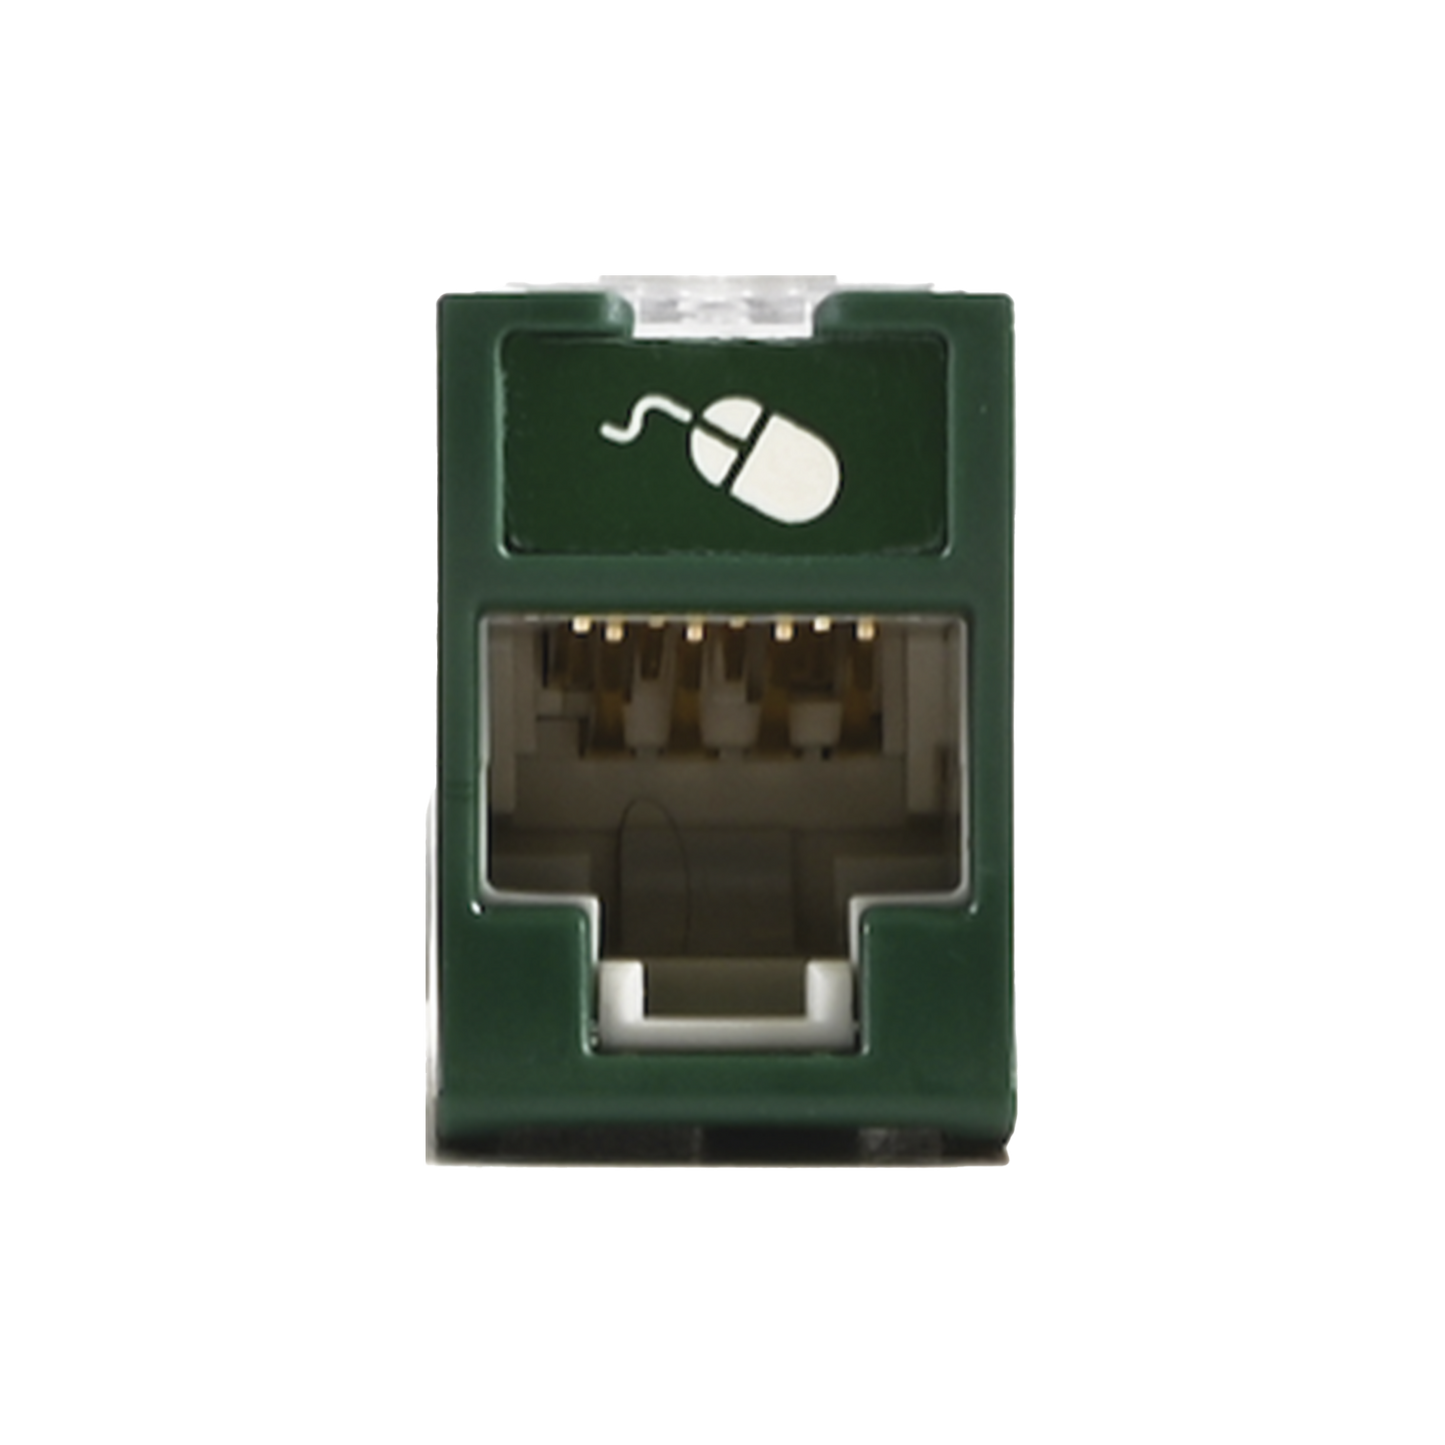 Jack UltraMAX Cat5e, UTP, Montaje híbrido en Placa de Pared (Plano y Angulado), Color Verde, Punch Down